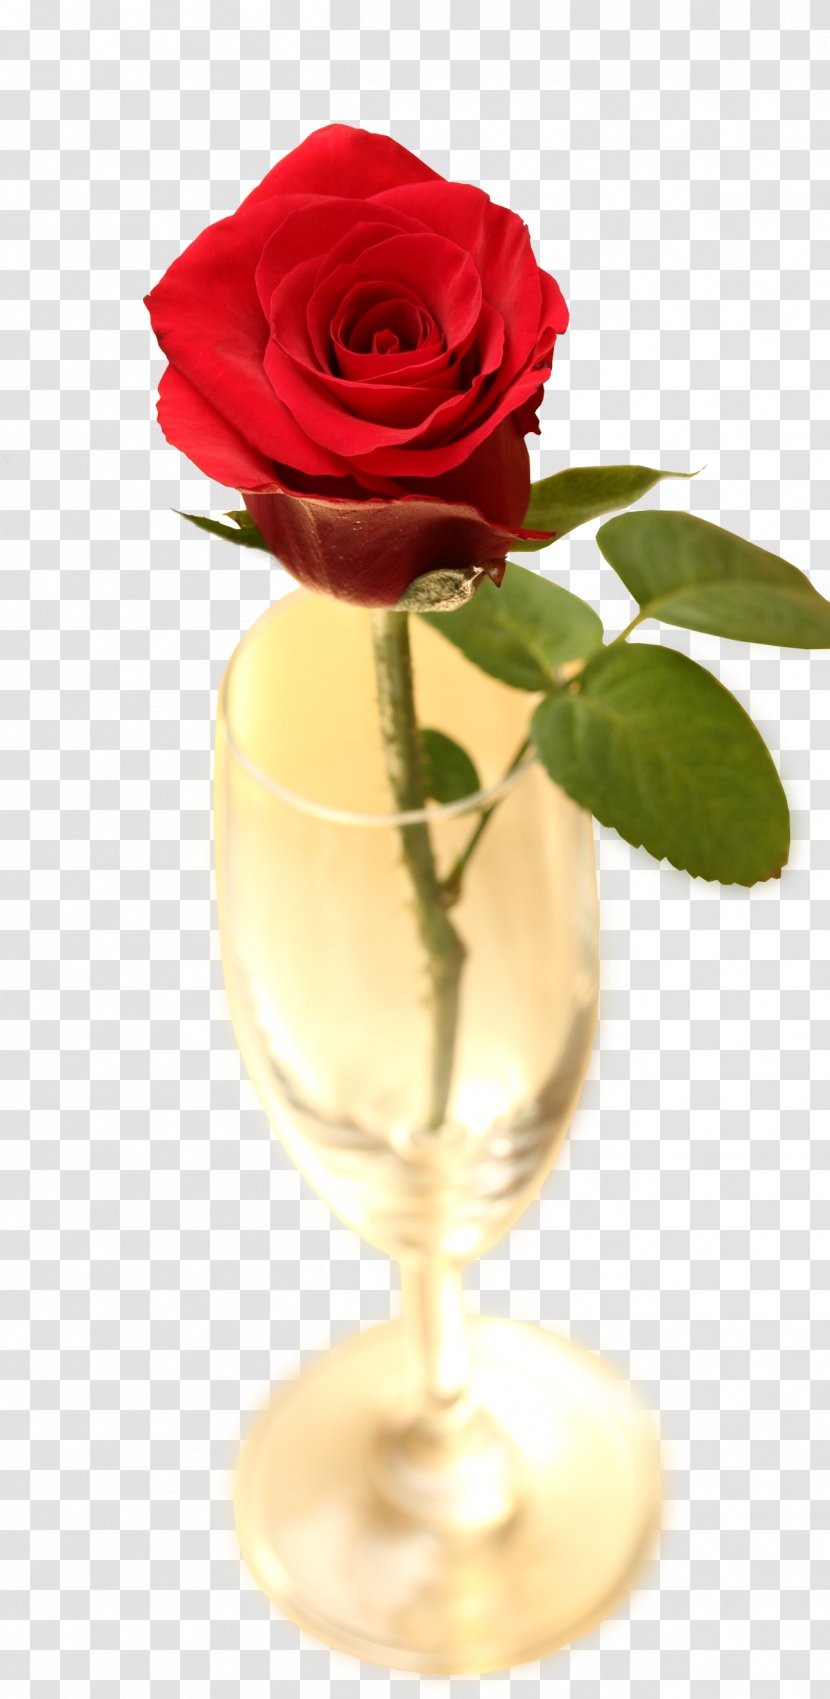 Red Flower Download - Garden Roses - Rose Ornament Transparent PNG